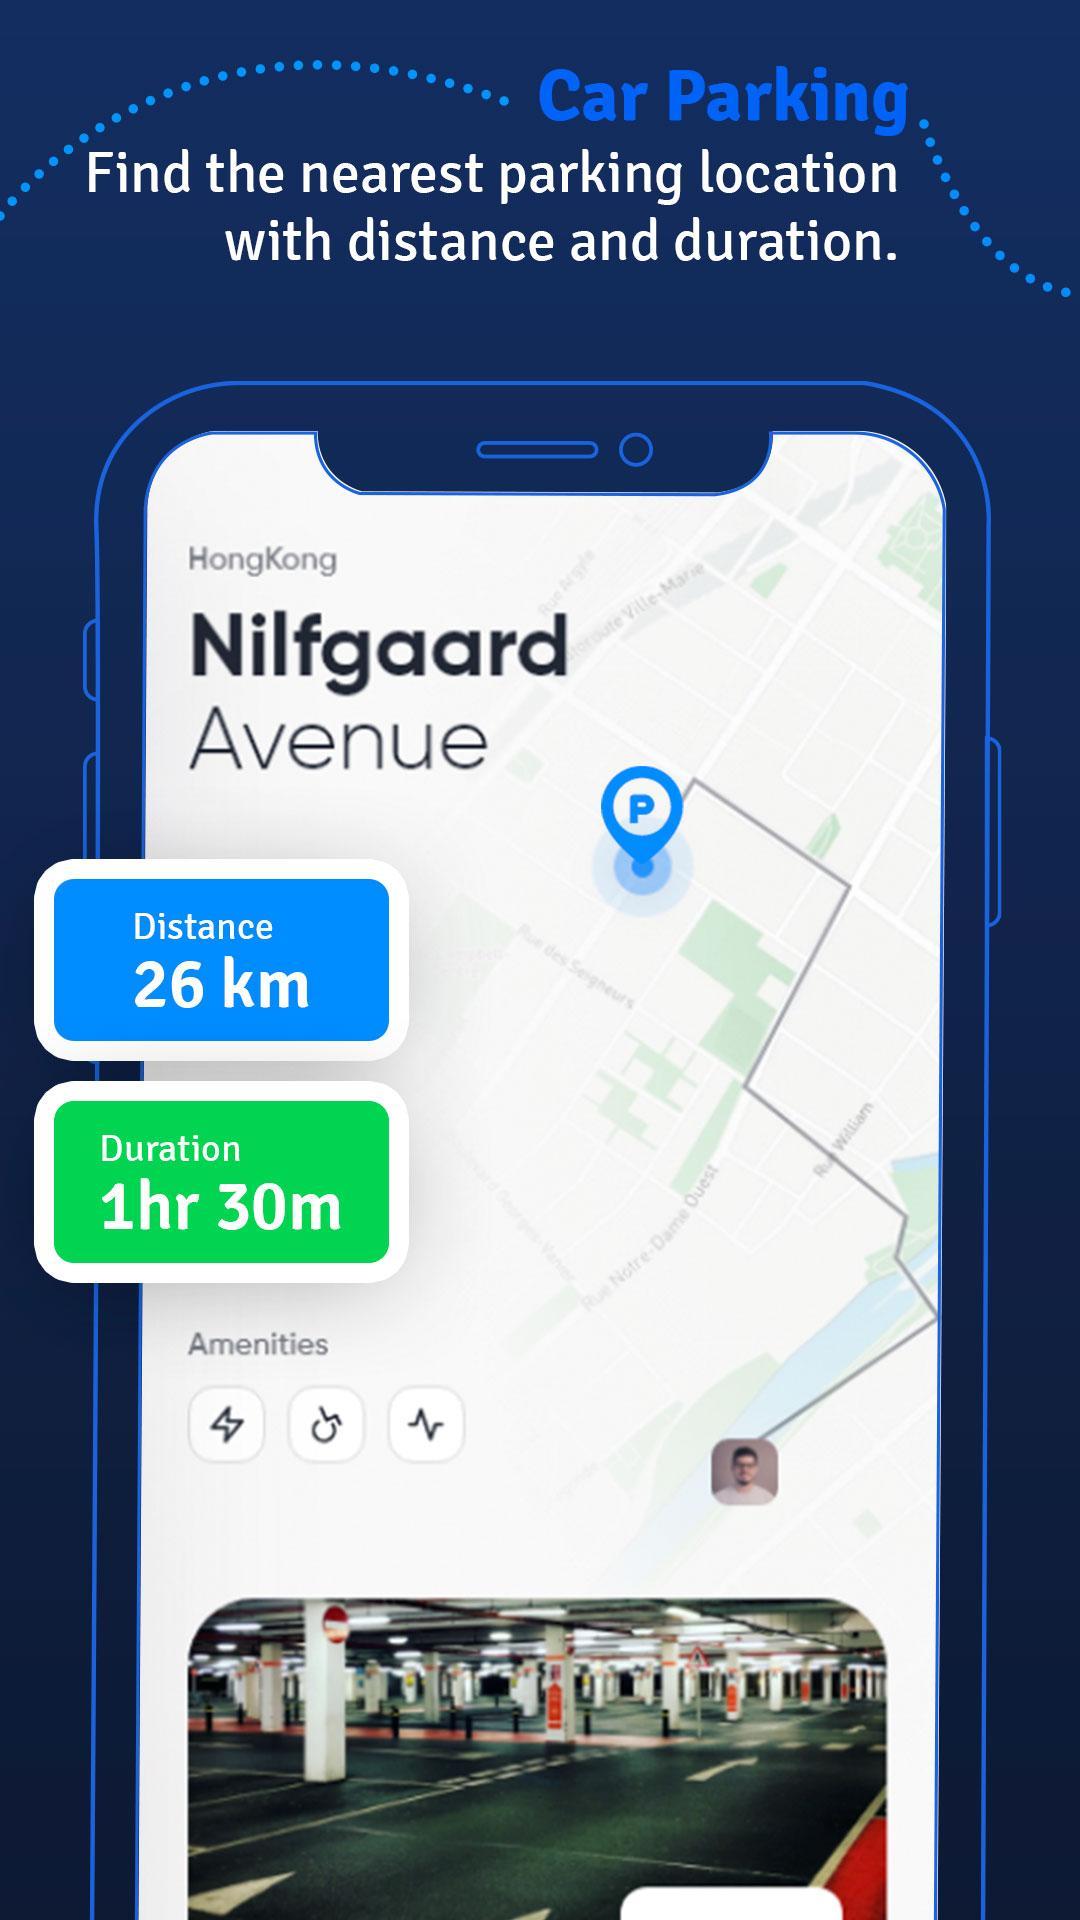 APK Bản đồ chỉ đường & giao thông cho Android giúp bạn điều hướng thông minh hơn bao giờ hết. Cập nhật thông tin giao thông liên tục để giúp bạn tránh được các kẹt xe và lấy đường đi ngắn nhất để tiết kiệm thời gian. Hãy cùng khám phá thế giới đầy màu sắc một cách thuận tiện và dễ dàng nhất.